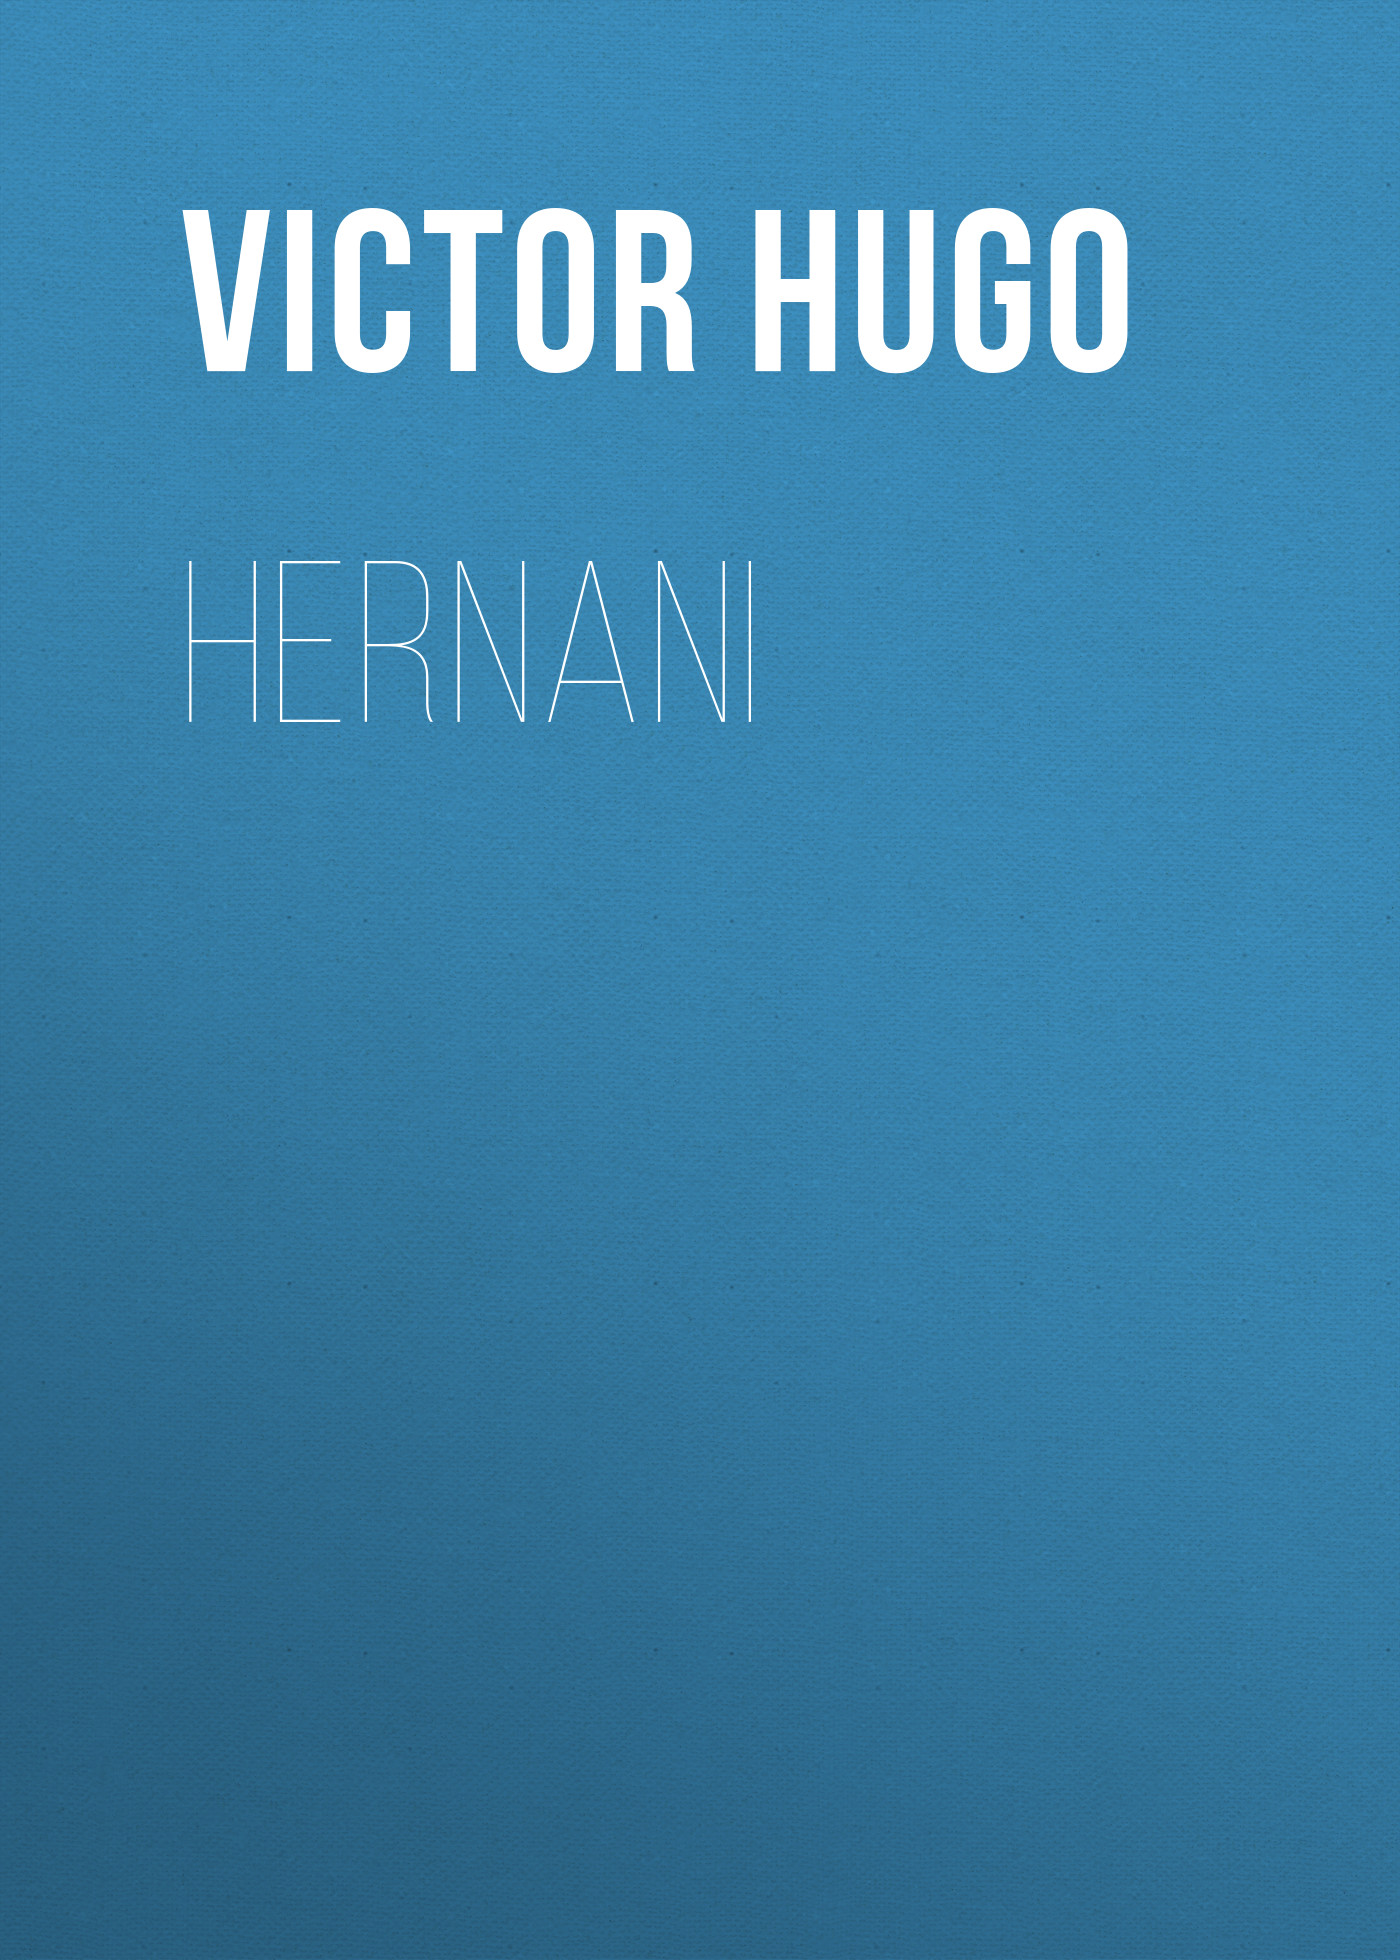 Книга Hernani из серии , созданная Victor Hugo, может относится к жанру Литература 19 века, Зарубежная старинная литература, Зарубежная классика. Стоимость электронной книги Hernani с идентификатором 25229980 составляет 0 руб.